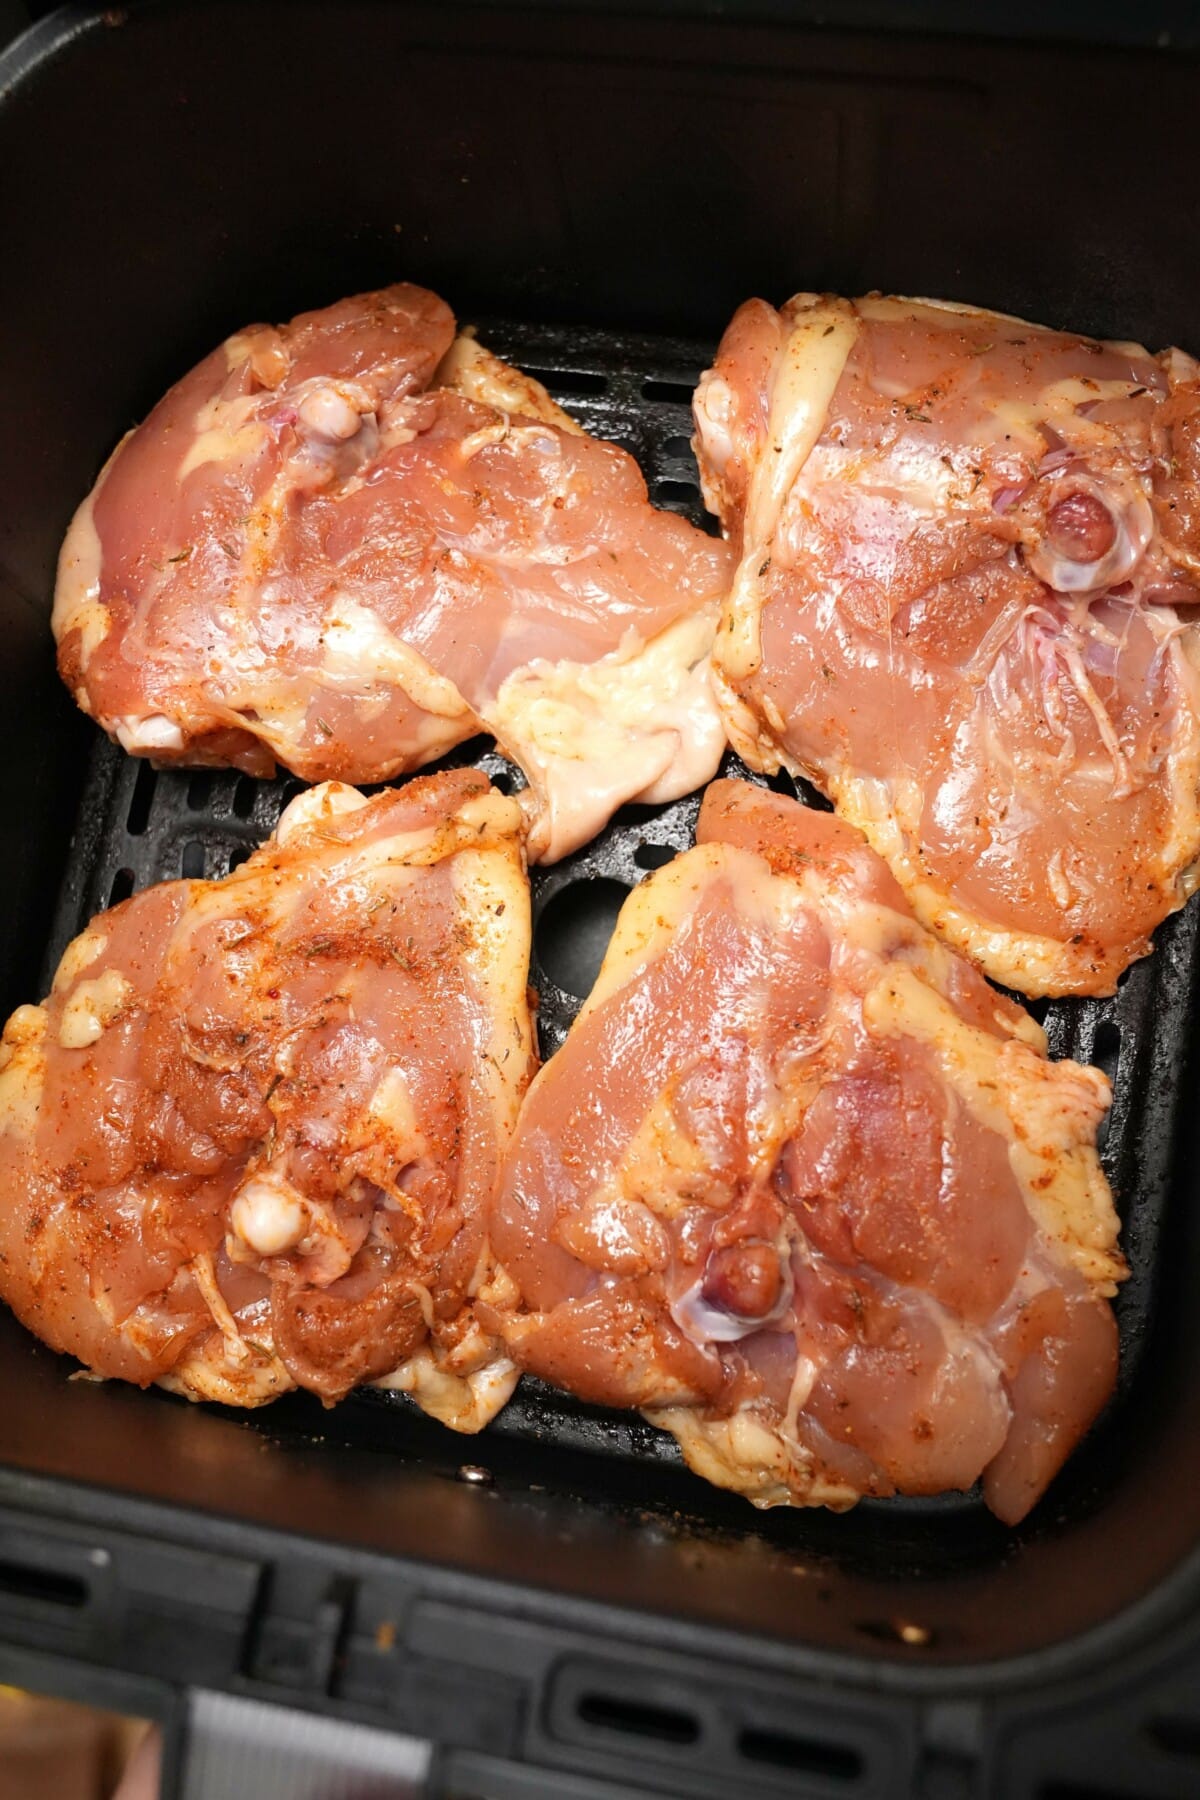 Chicken thighs skin side down in an air fryer basket.